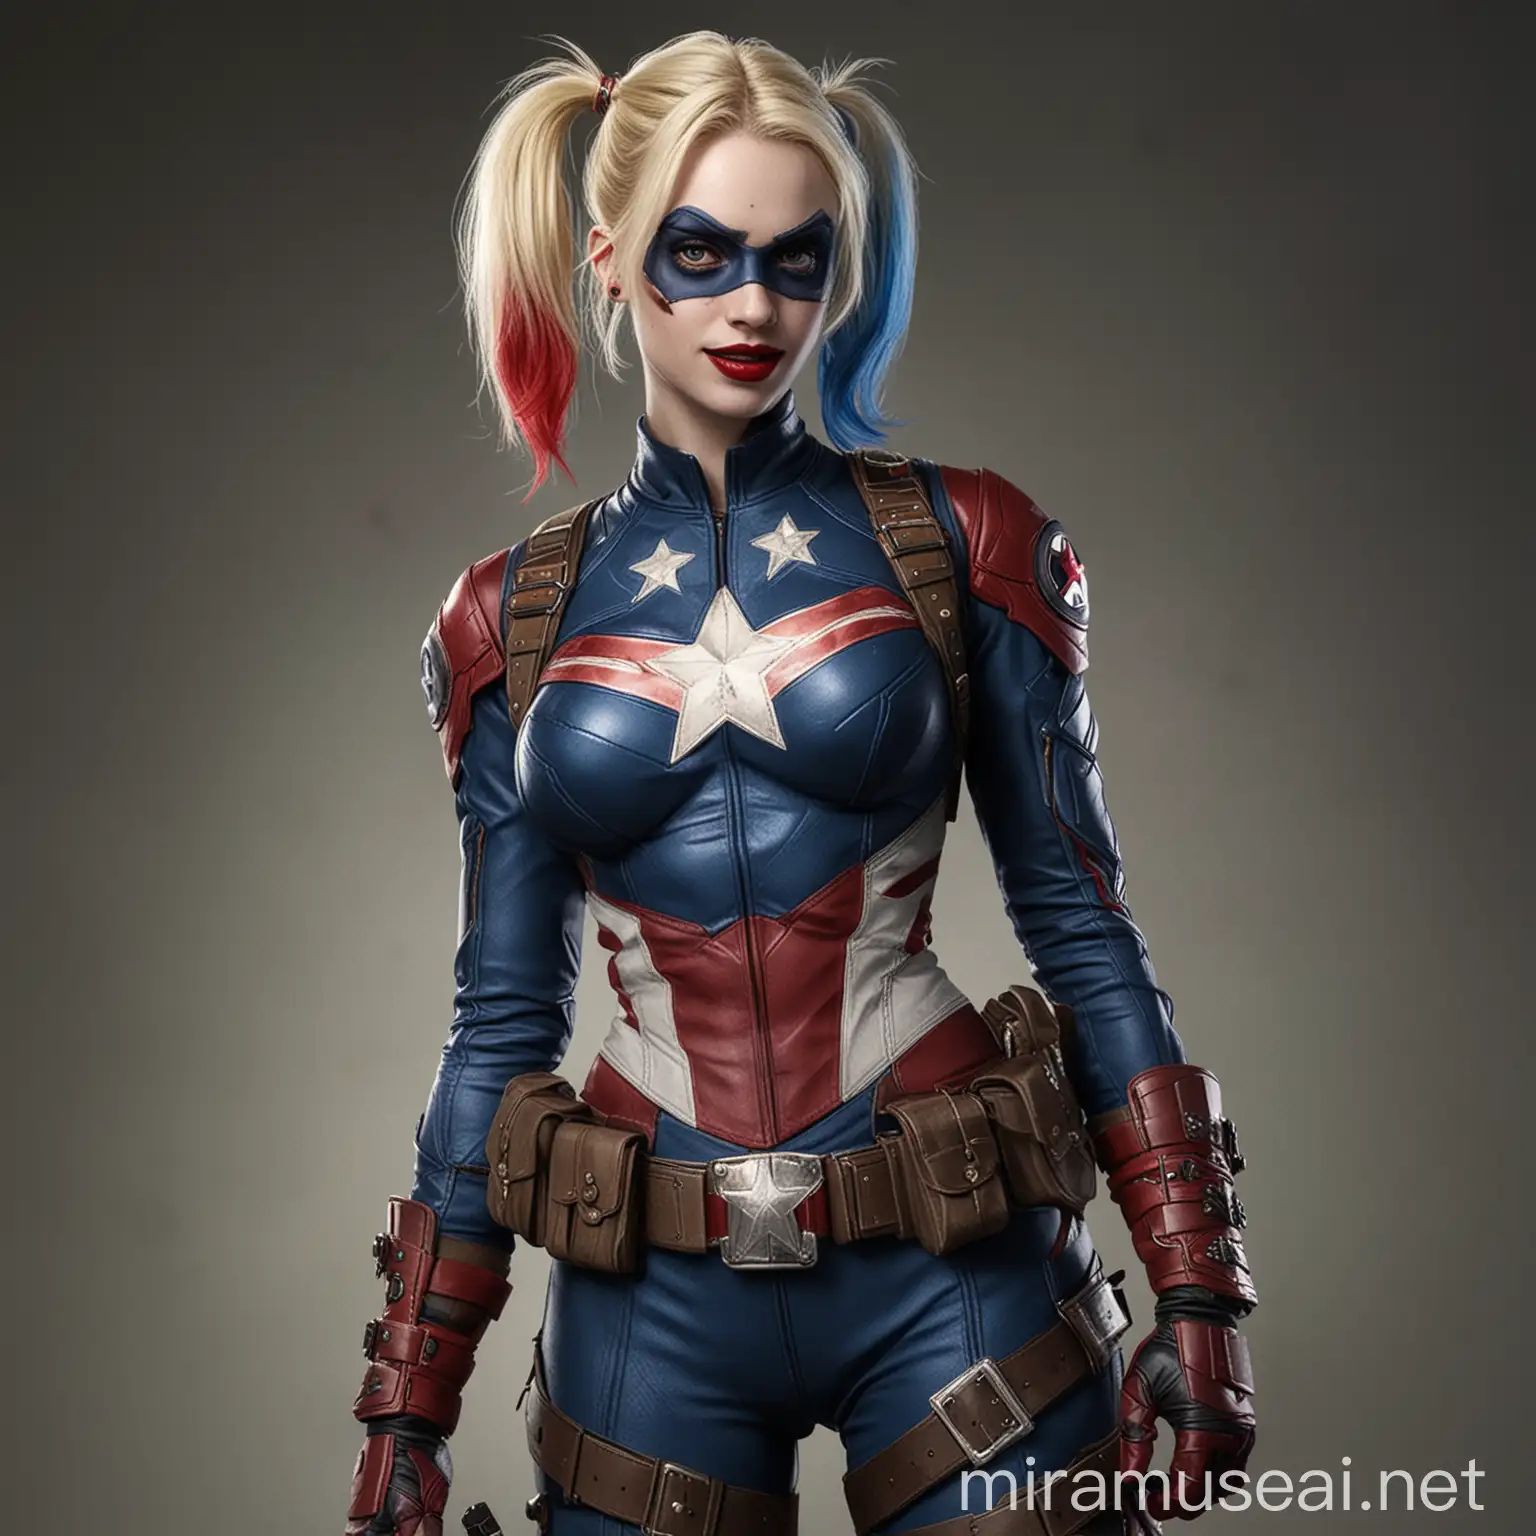 Harley Quinn disfrazada del Capitán America
